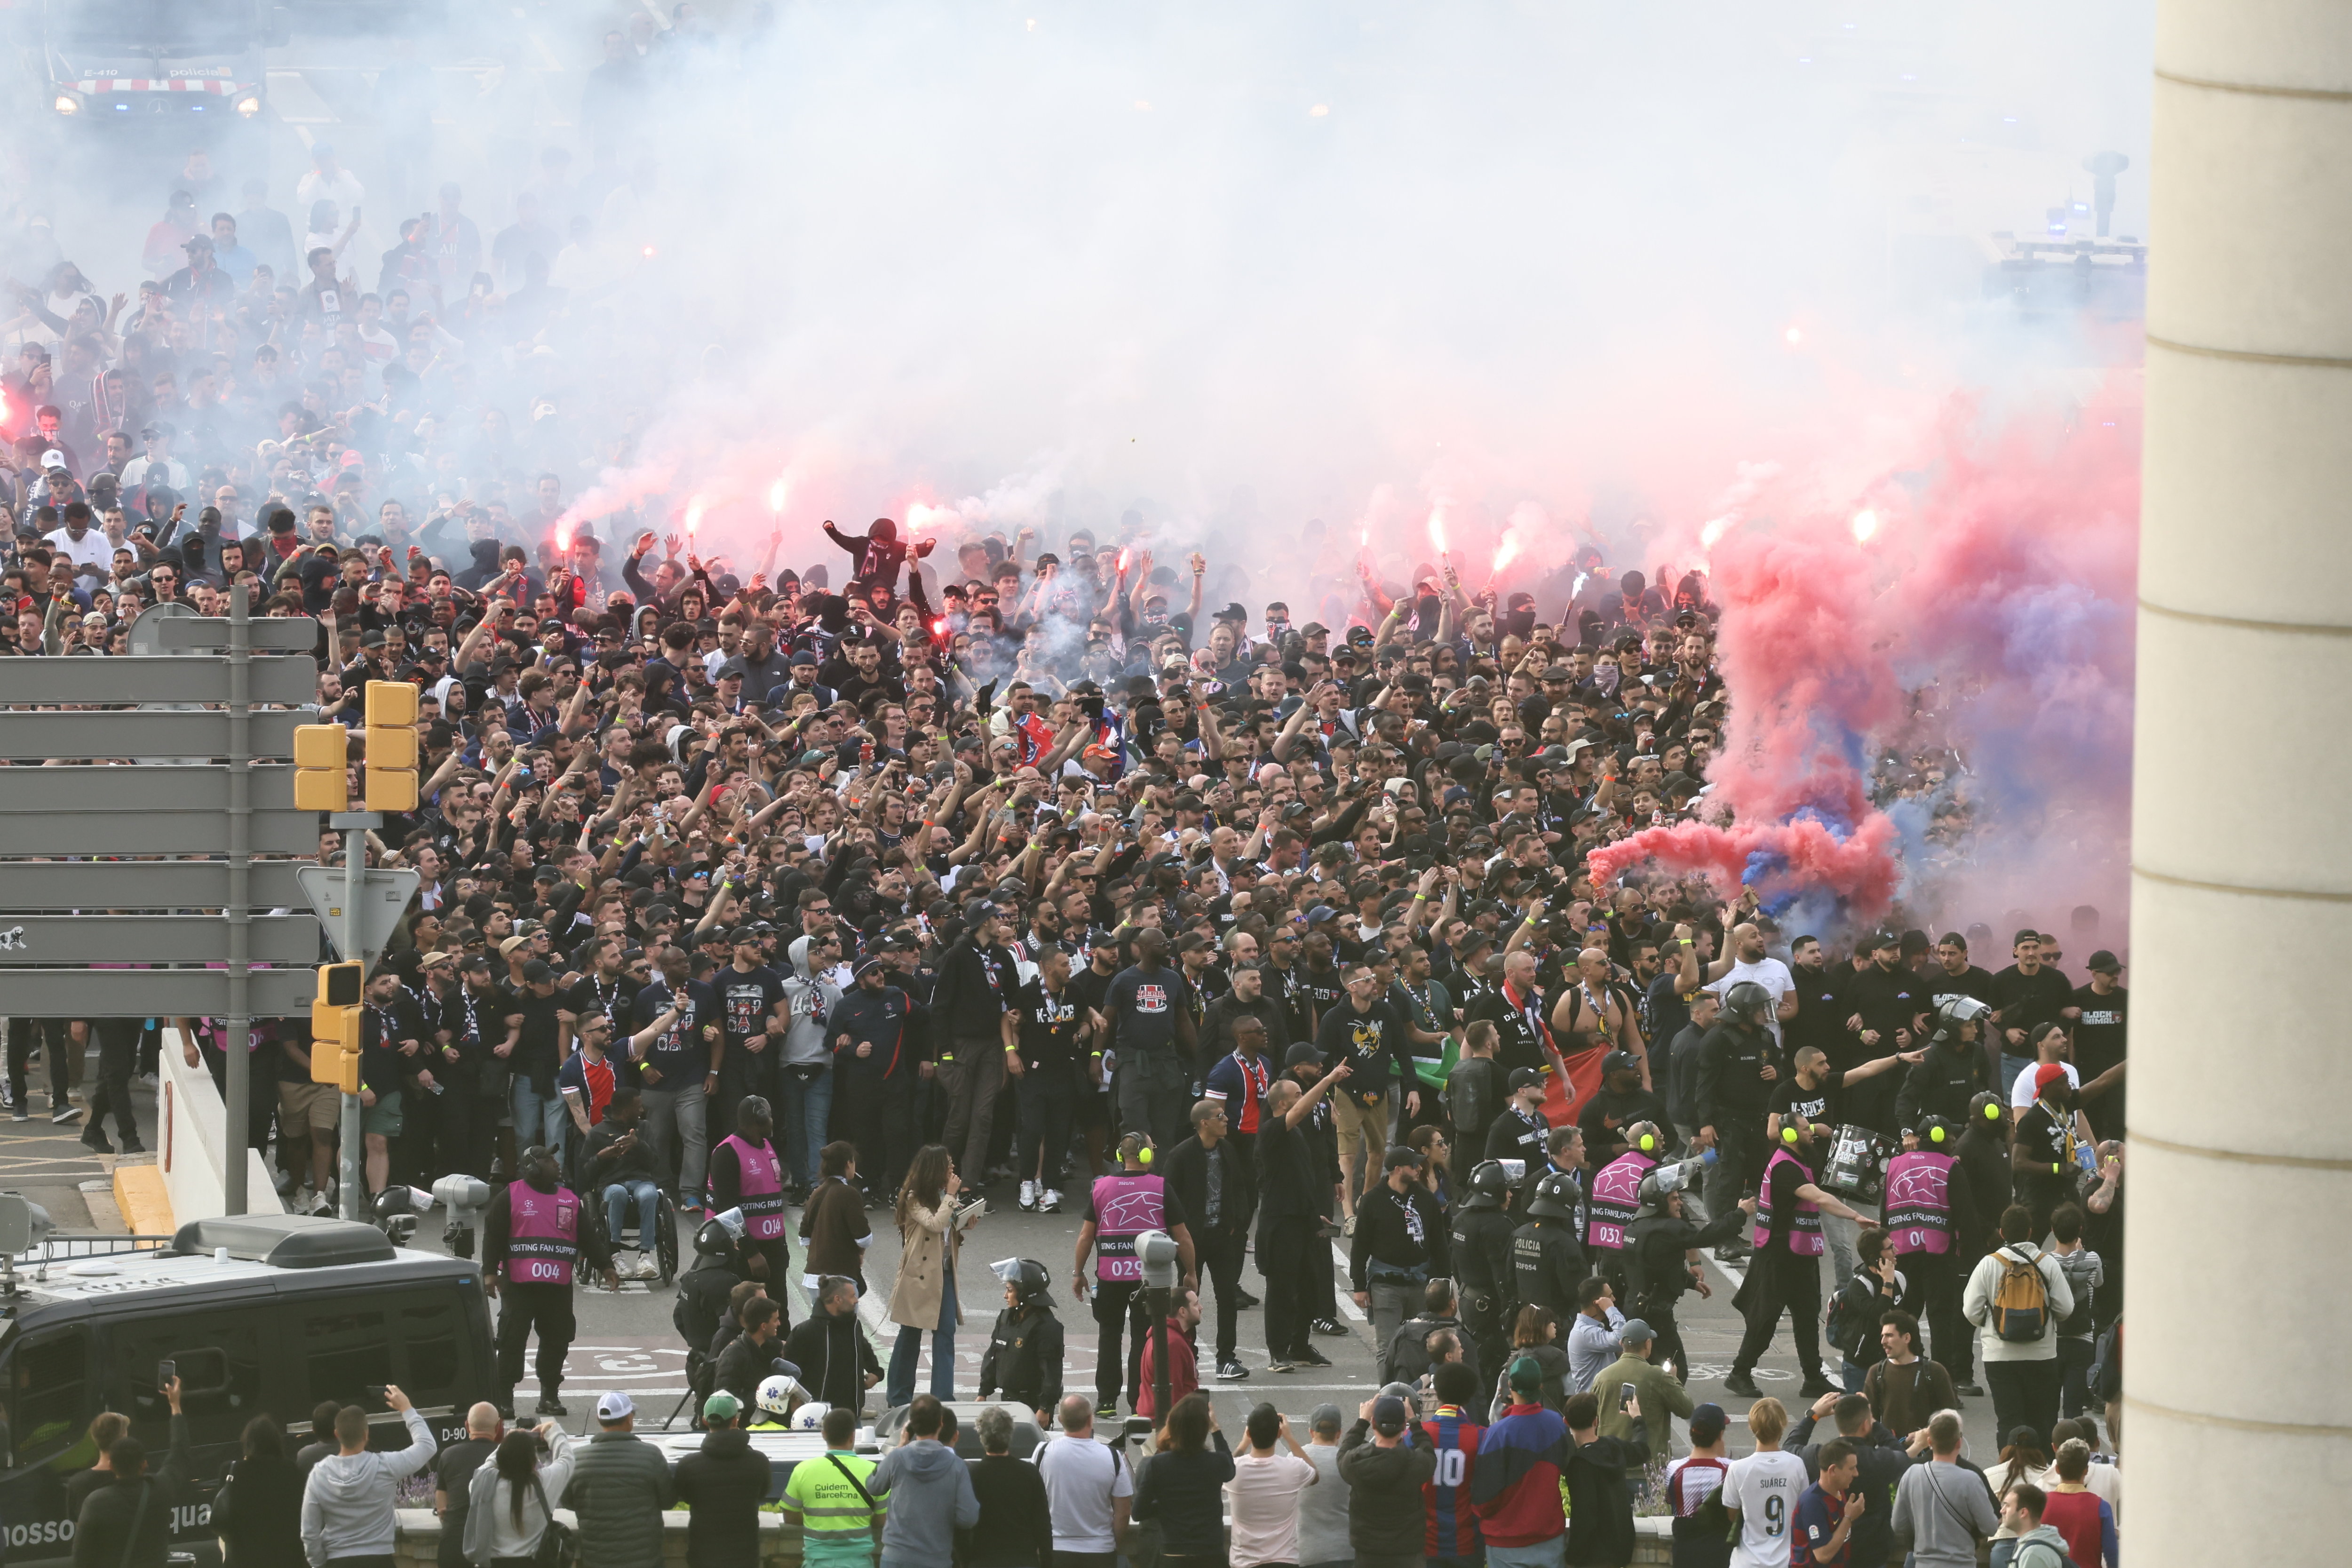 Le cortège des supporters parisiens avant le match face au Barça. Photo LP / Fred Dugit